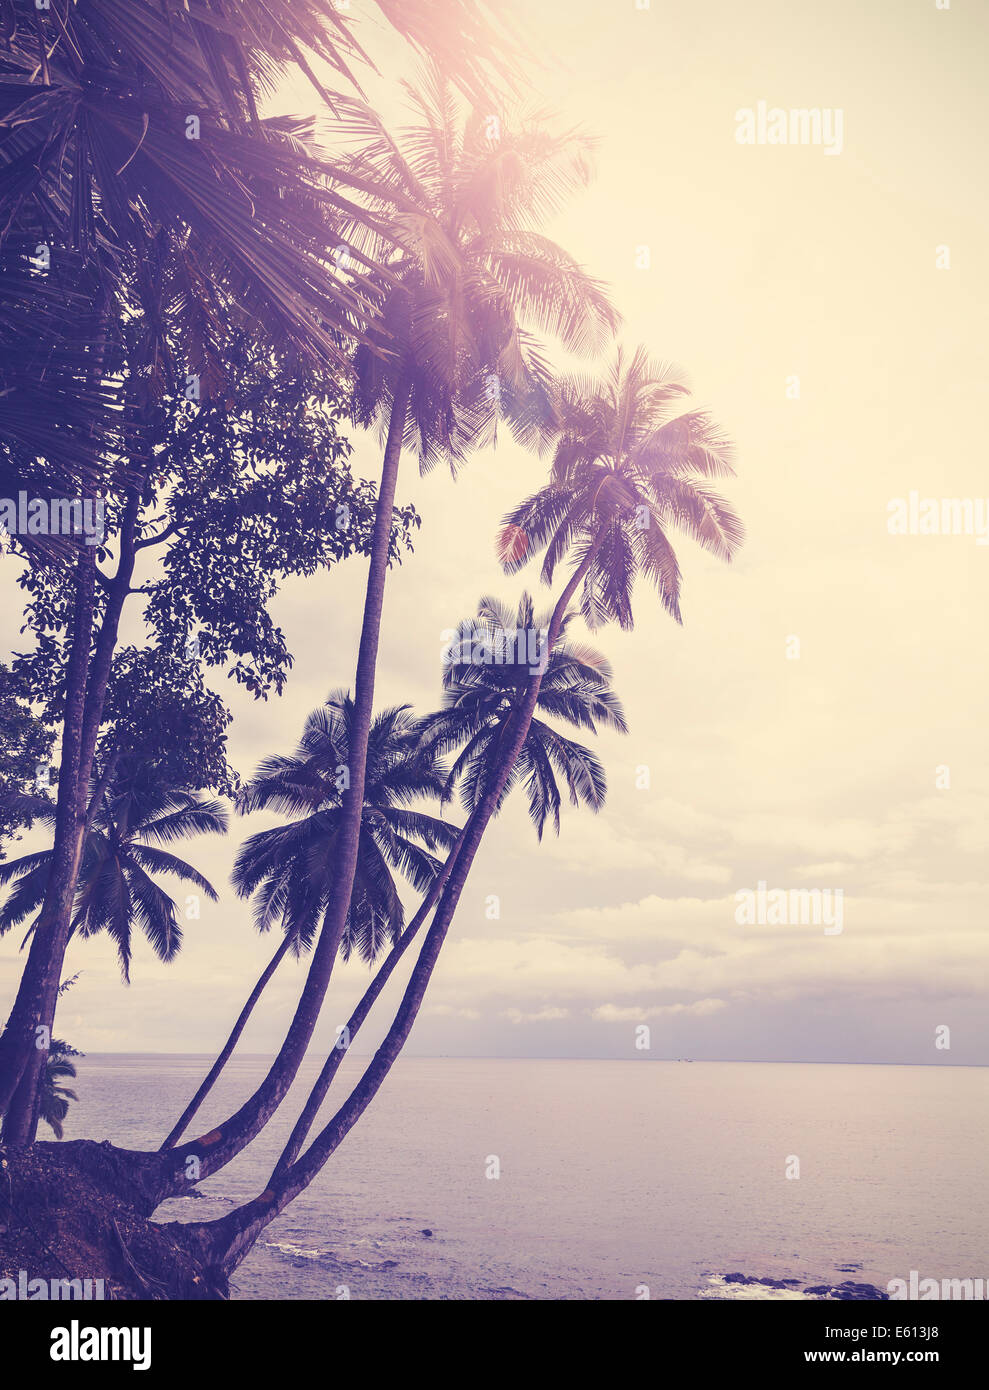 Vintage stilizzata spiaggia tropicale con Palm tree al tramonto Foto Stock